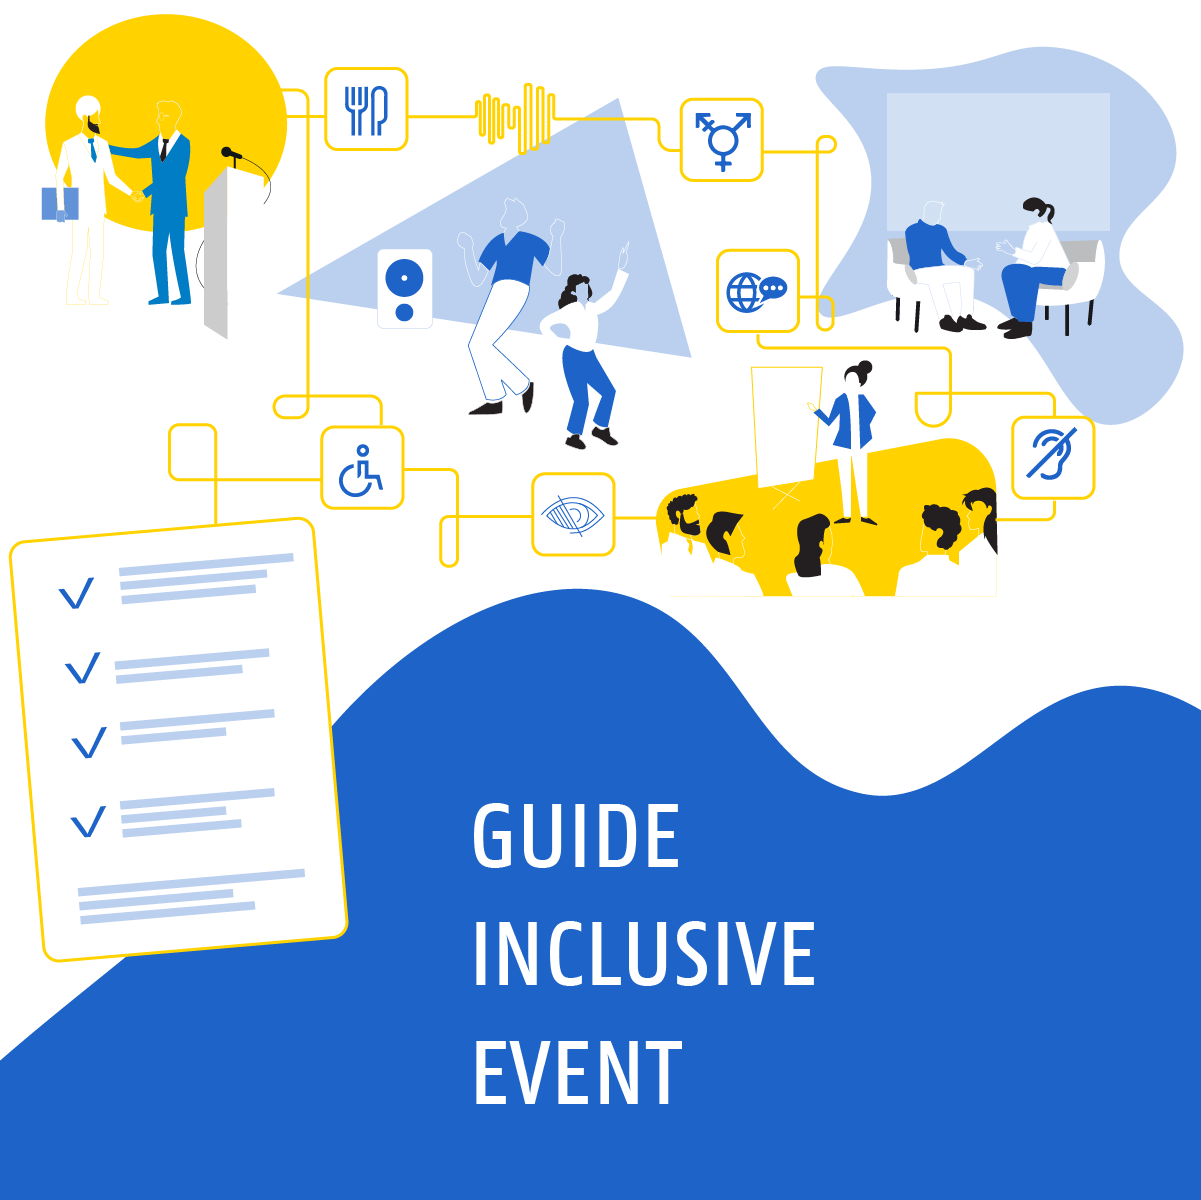 Guide inclusive event